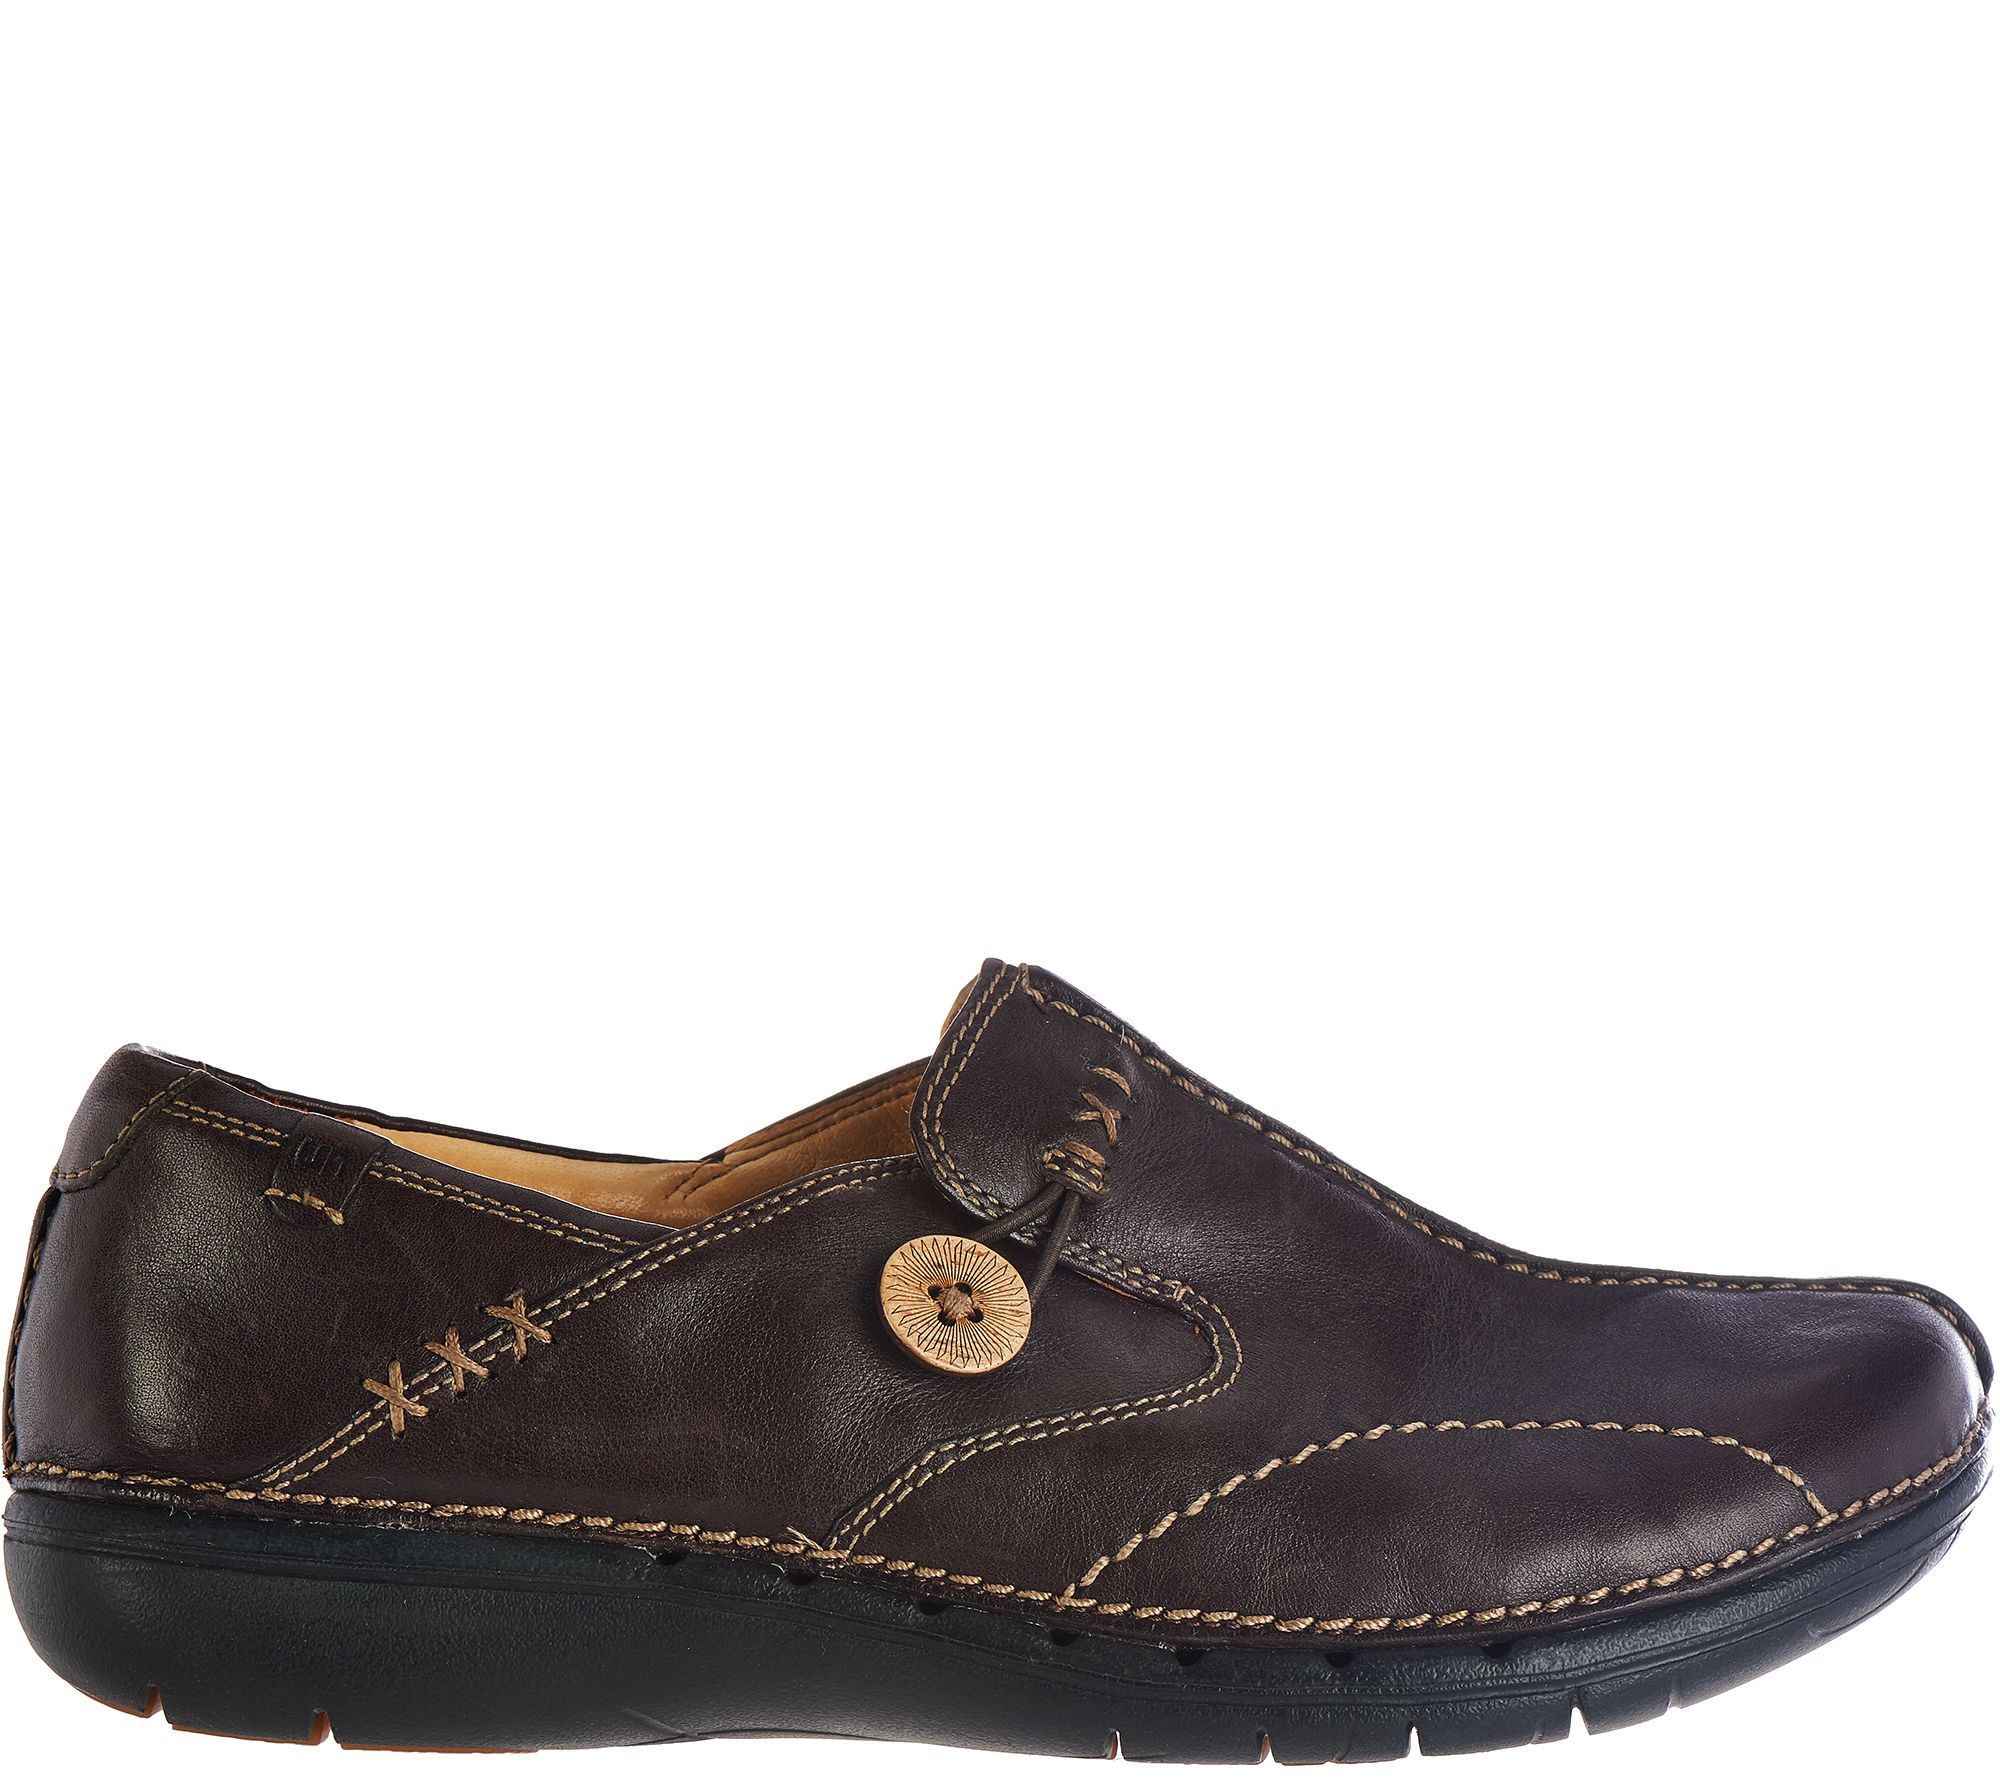 Hacia atrás Confesión contacto Clarks Unstructured Leather Slip-on Shoes - Un.Loop - QVC.com